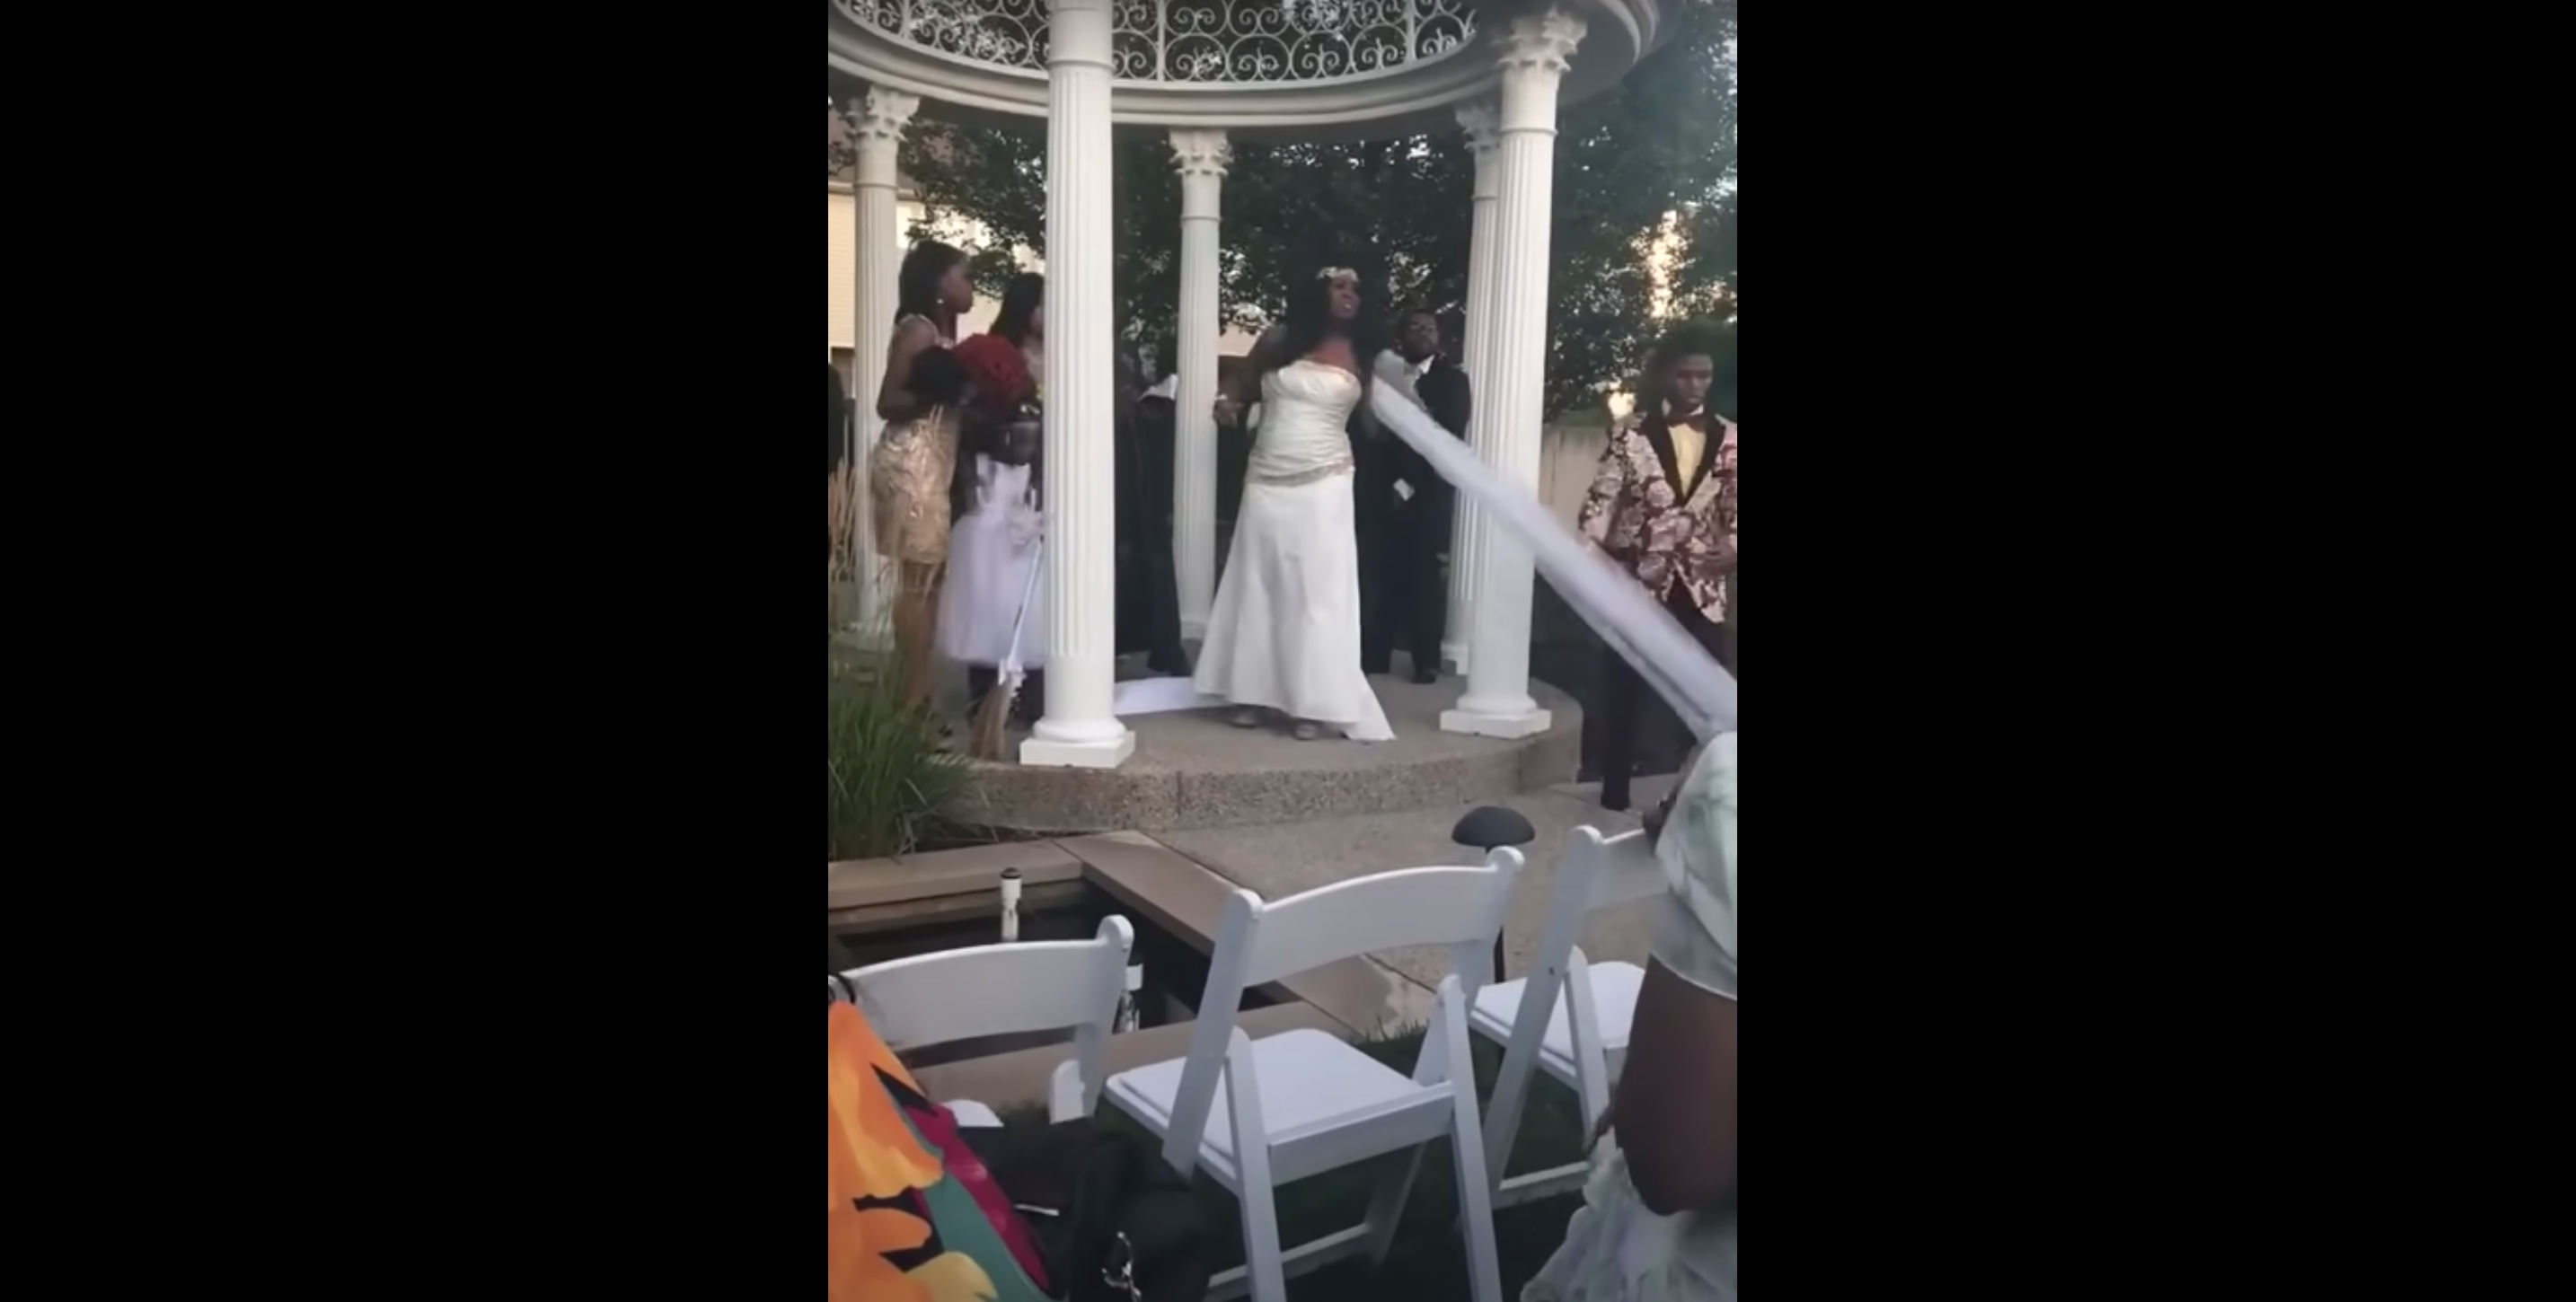 Der Schleier der Braut wird versehentlich entfernt | Quelle: Youtube.com/Toneciaga